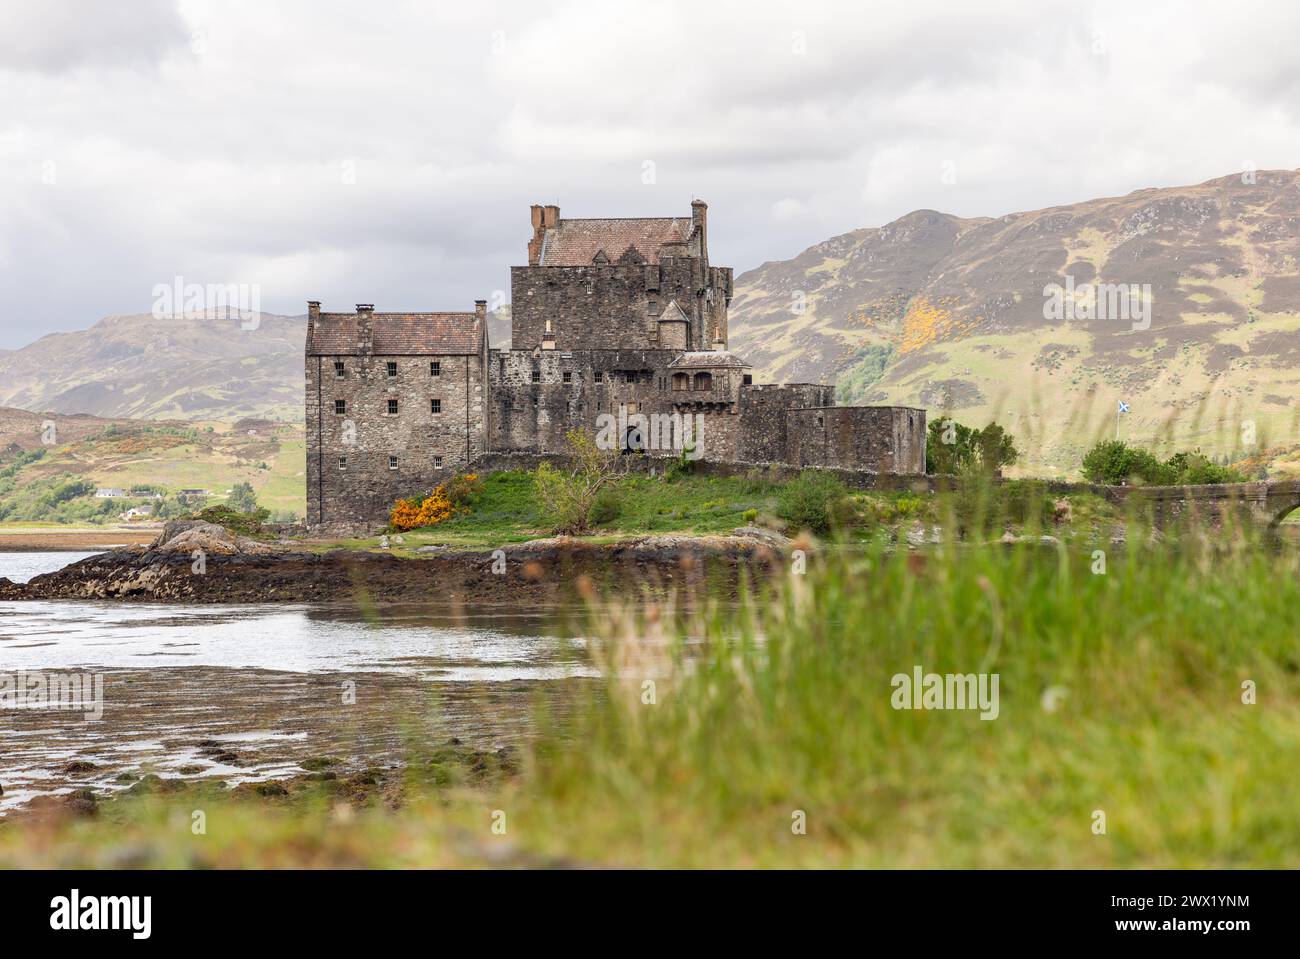 Le château d'Eilean Donan, bastion du patrimoine écossais, s'élève contre une tapisserie de terrain montagneux, avec un premier plan d'herbes luxuriantes Banque D'Images